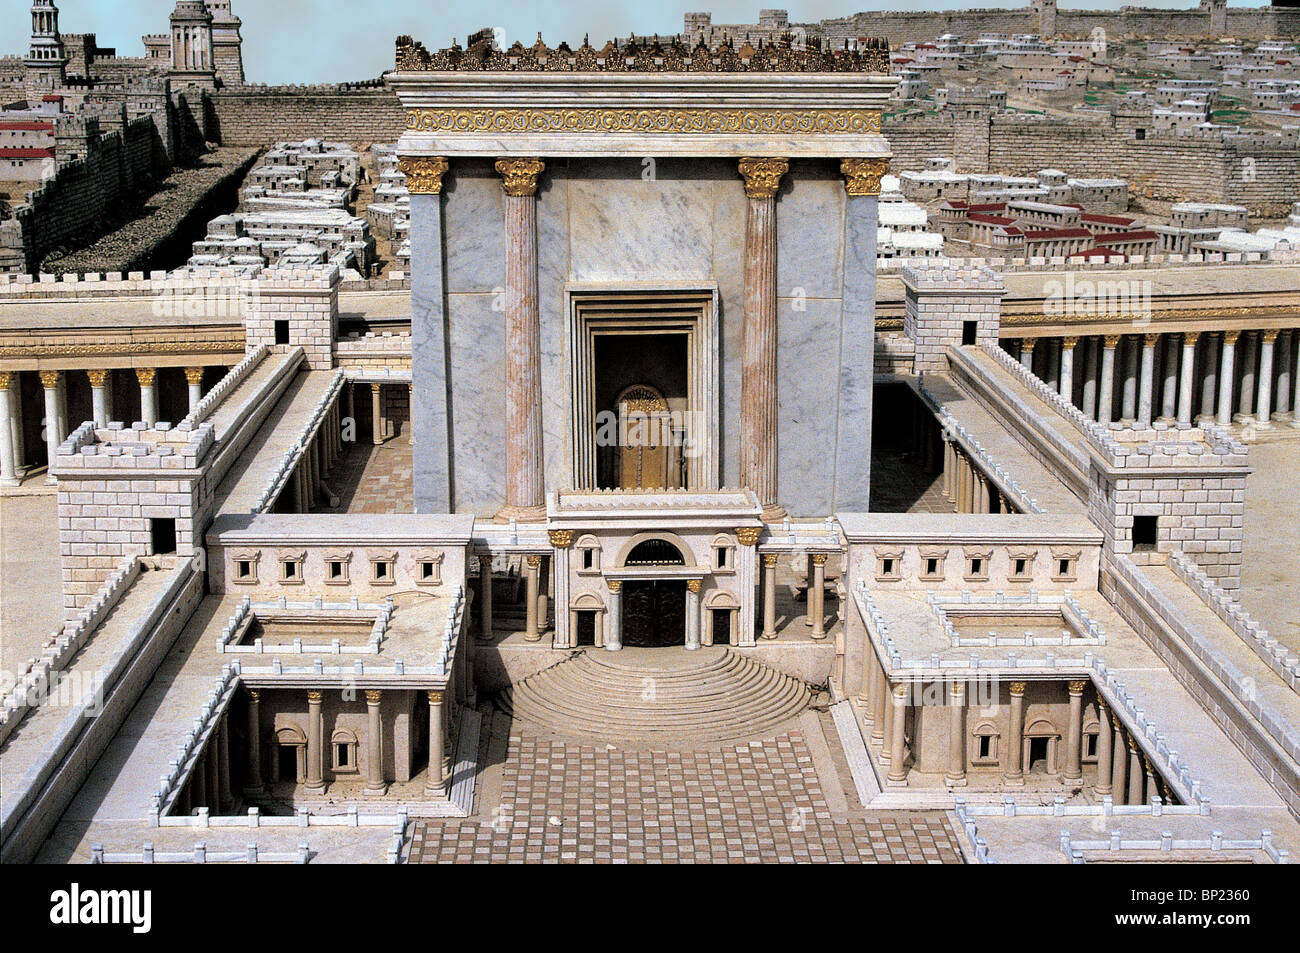 Modèle d'HEROD'S Temple de Jérusalem. Le temple était un bâtiment de marbre de 50 m de haut CONSTRUIT SUR LA COLLINE LA PLUS ÉLEVÉE DE JÉRUSALEM Banque D'Images